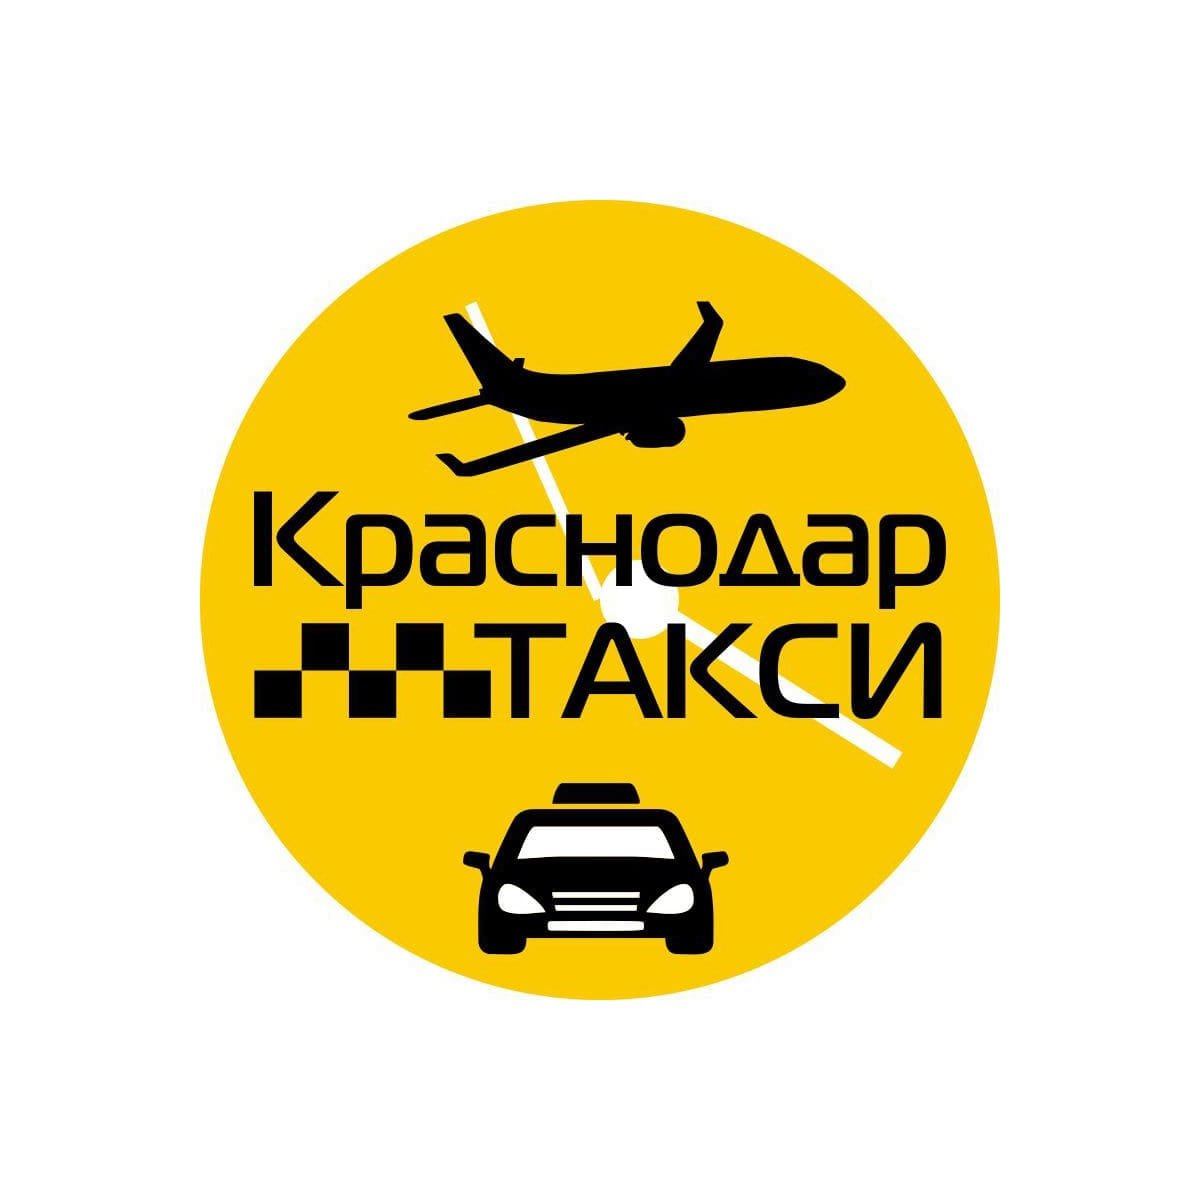 Заказать такси в краснодаре недорого по телефону. Такси Краснодар. Трансфер Краснодар такси. Номер такси в Краснодаре. Номер таксиста в Краснодаре.